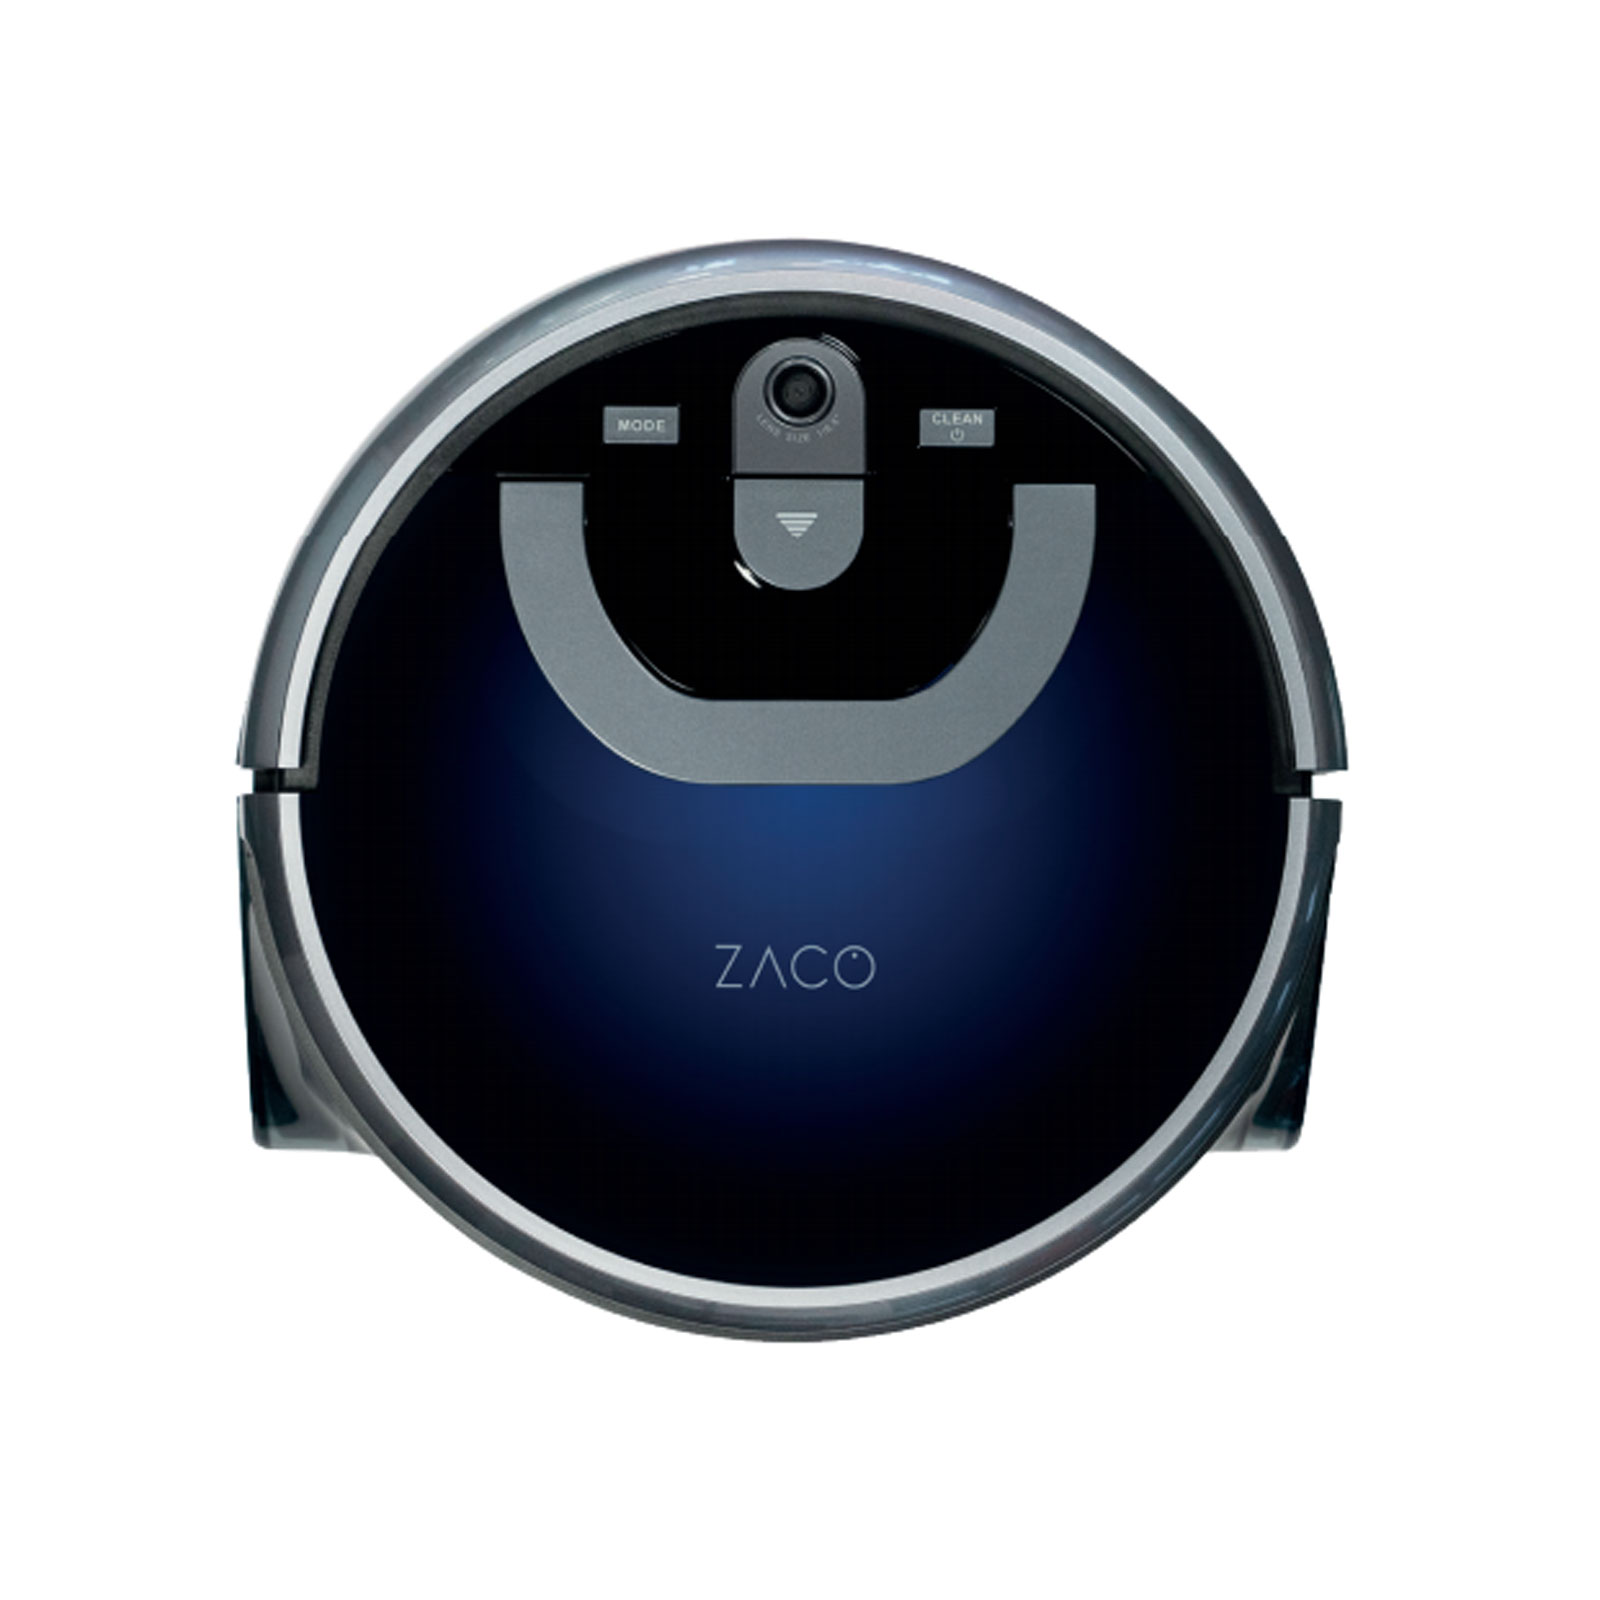 ZACO W450 Saugroboter mit Wischfunktion